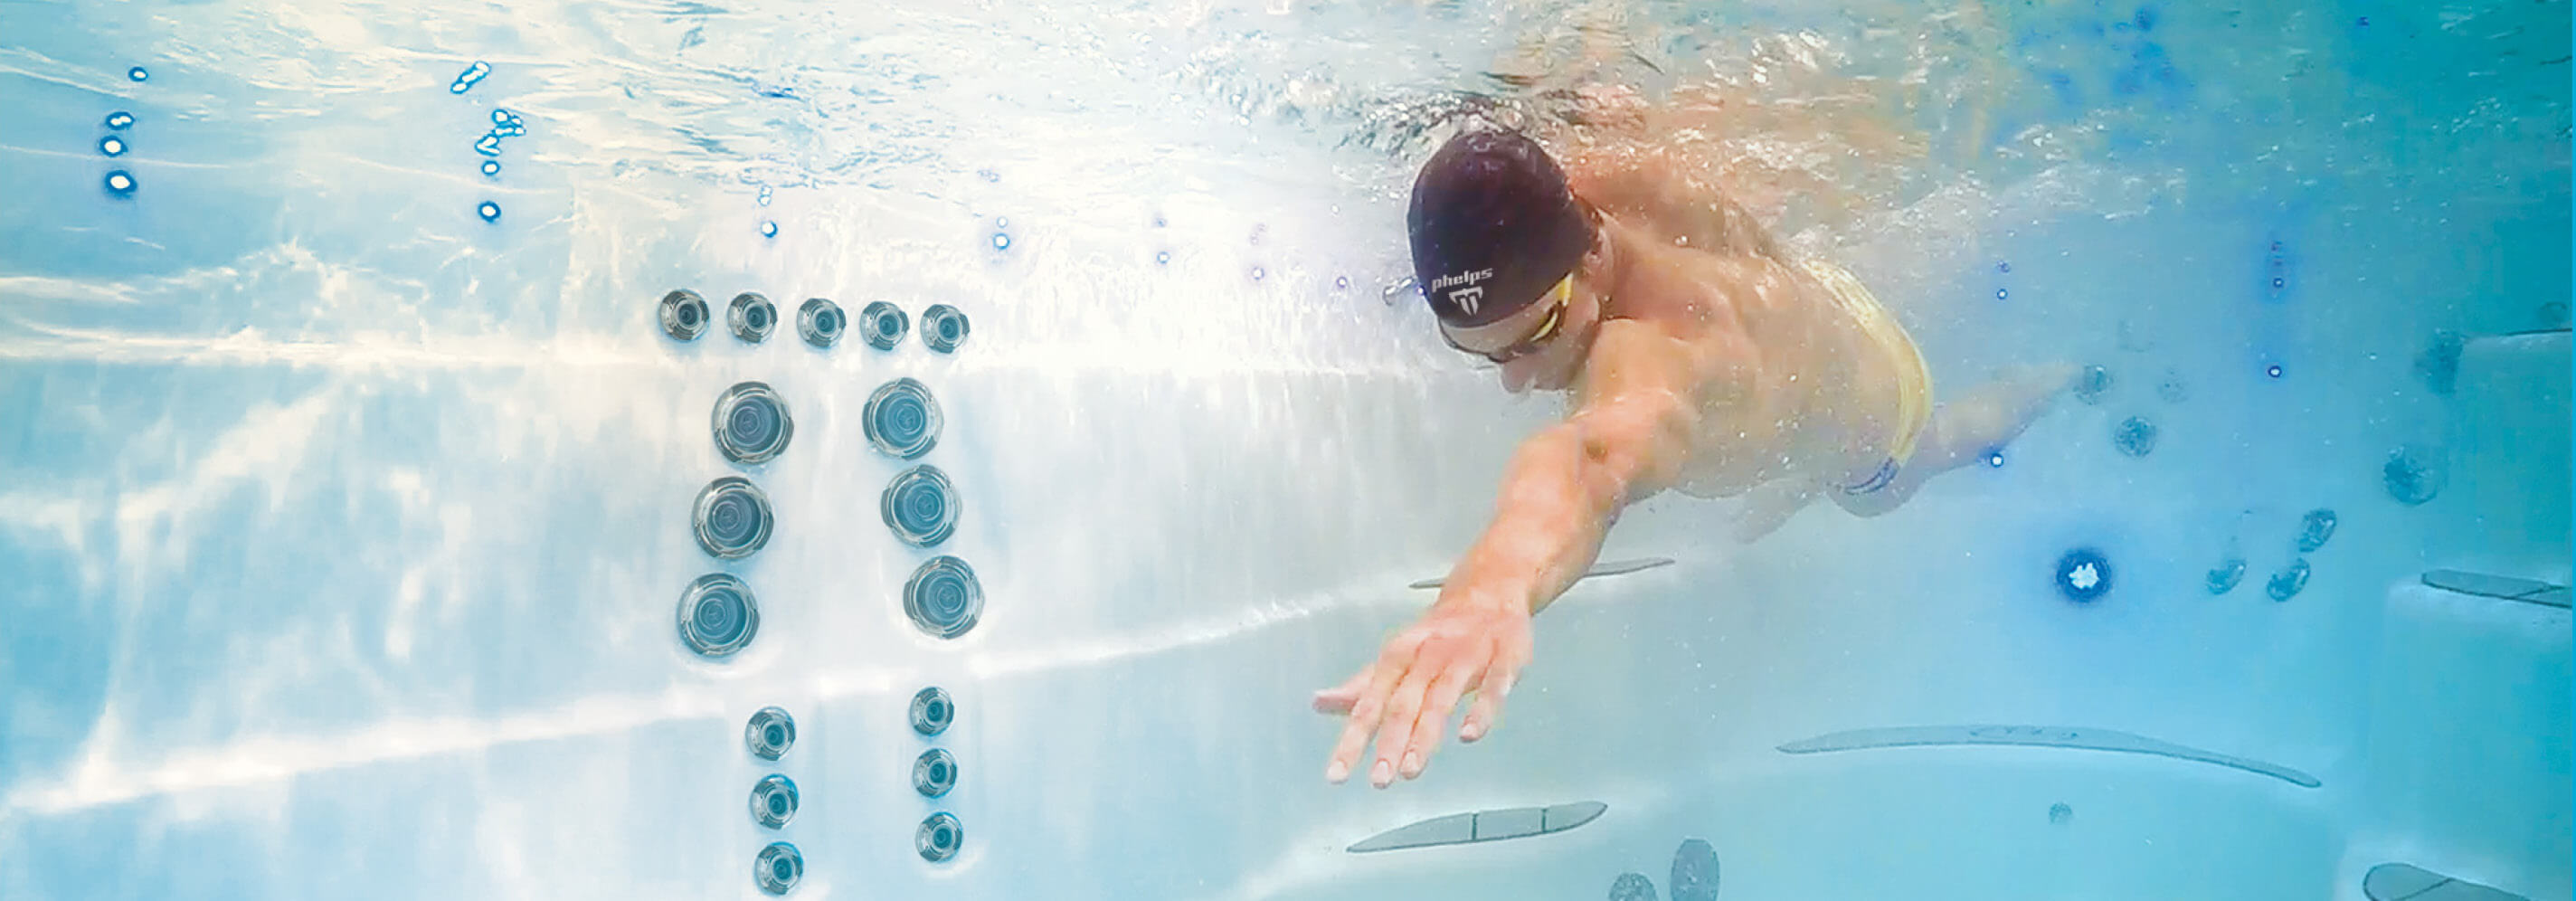 Michael Phelps nage dans un spa de natation Michael Phelps Signature Swim Spa by Master Spas